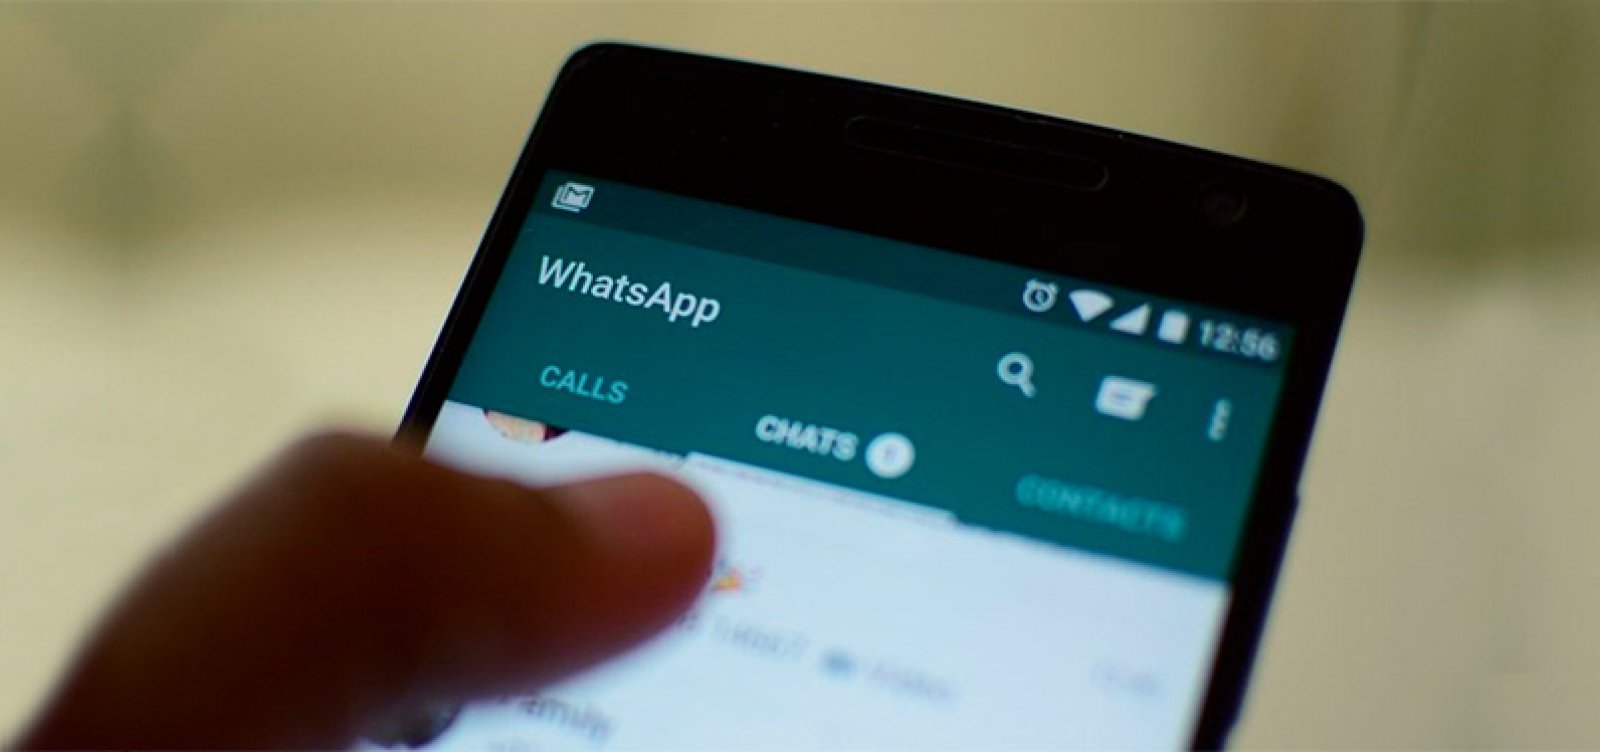 WhatsApp bane contas de agências por disparo de mensagens anti-PT